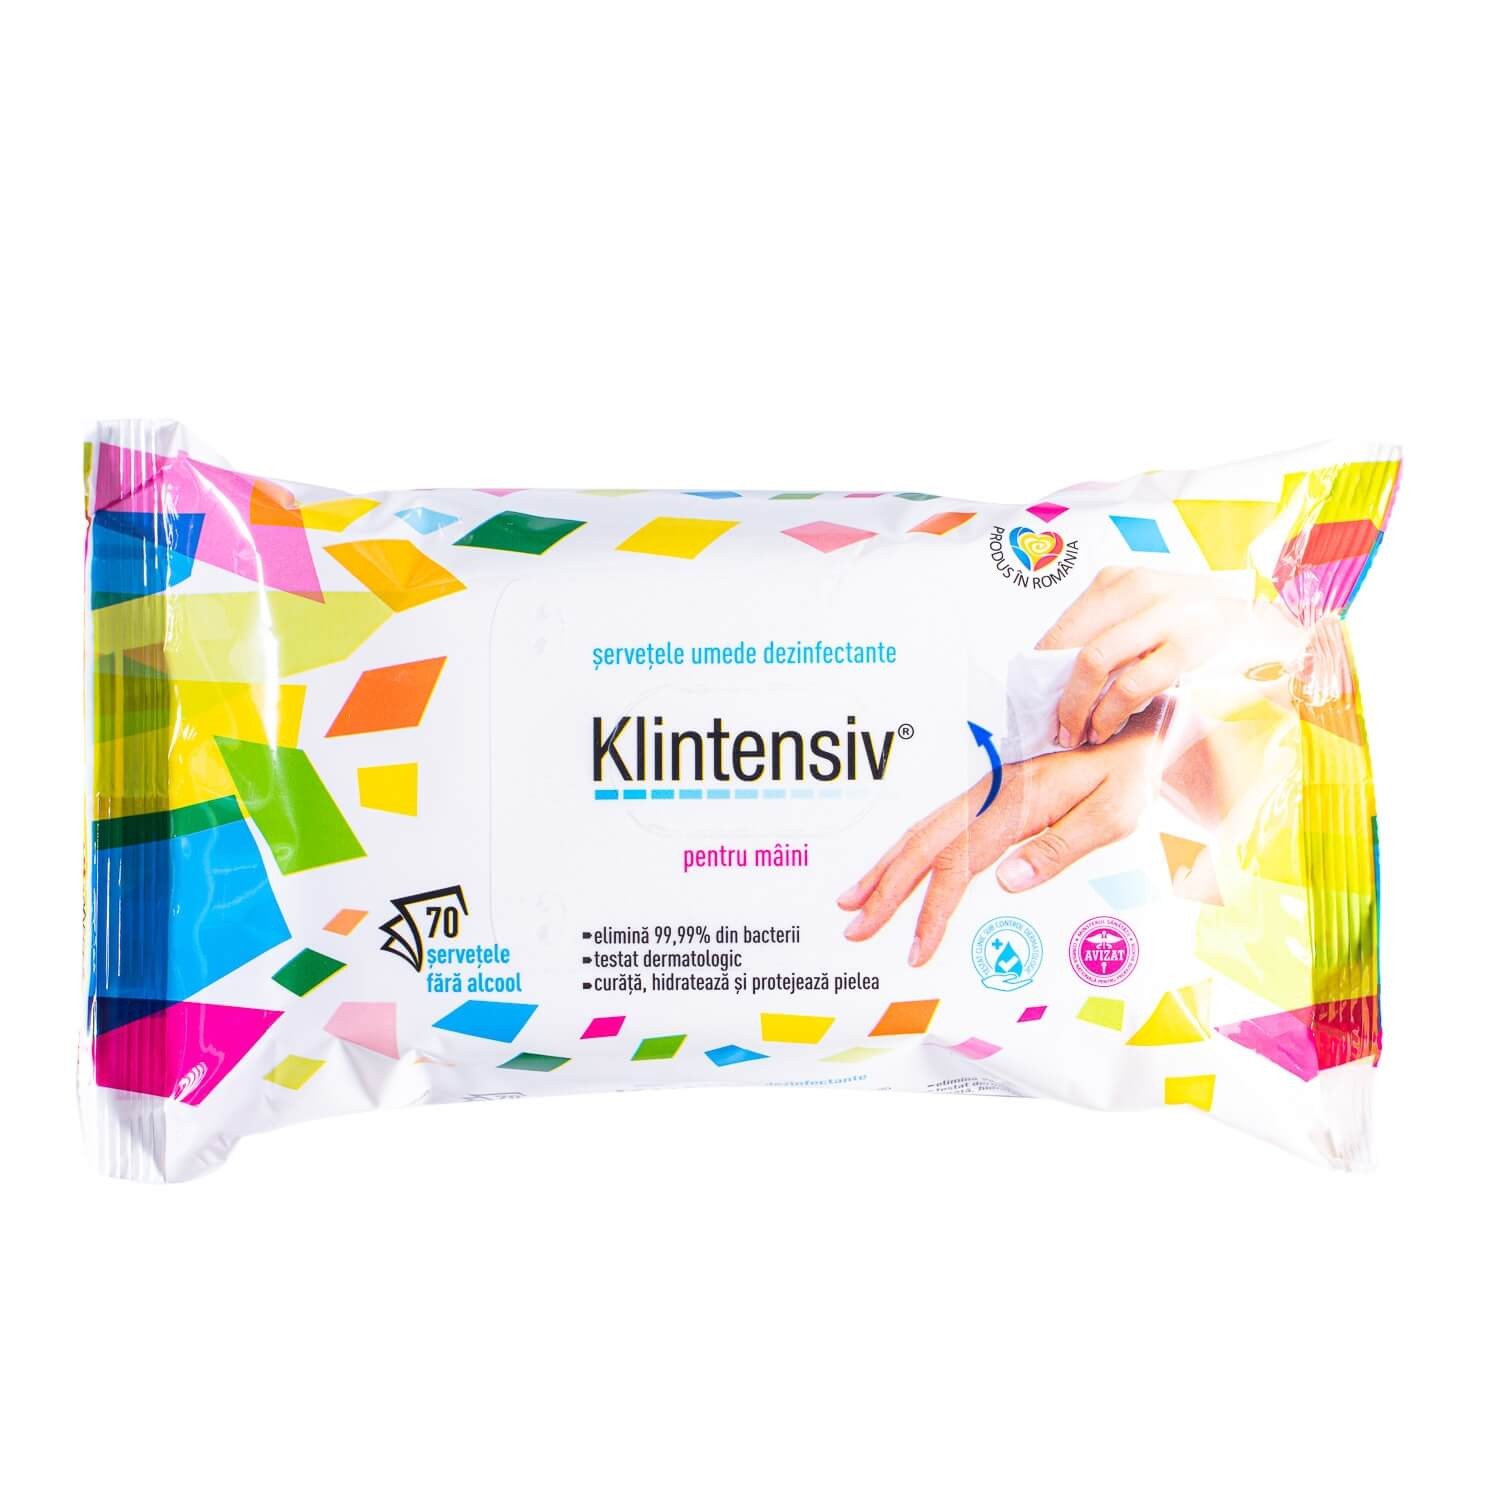 KLINTENSIV® – Servetele umede dezinfectante pentru maini 70 buc Klintensiv